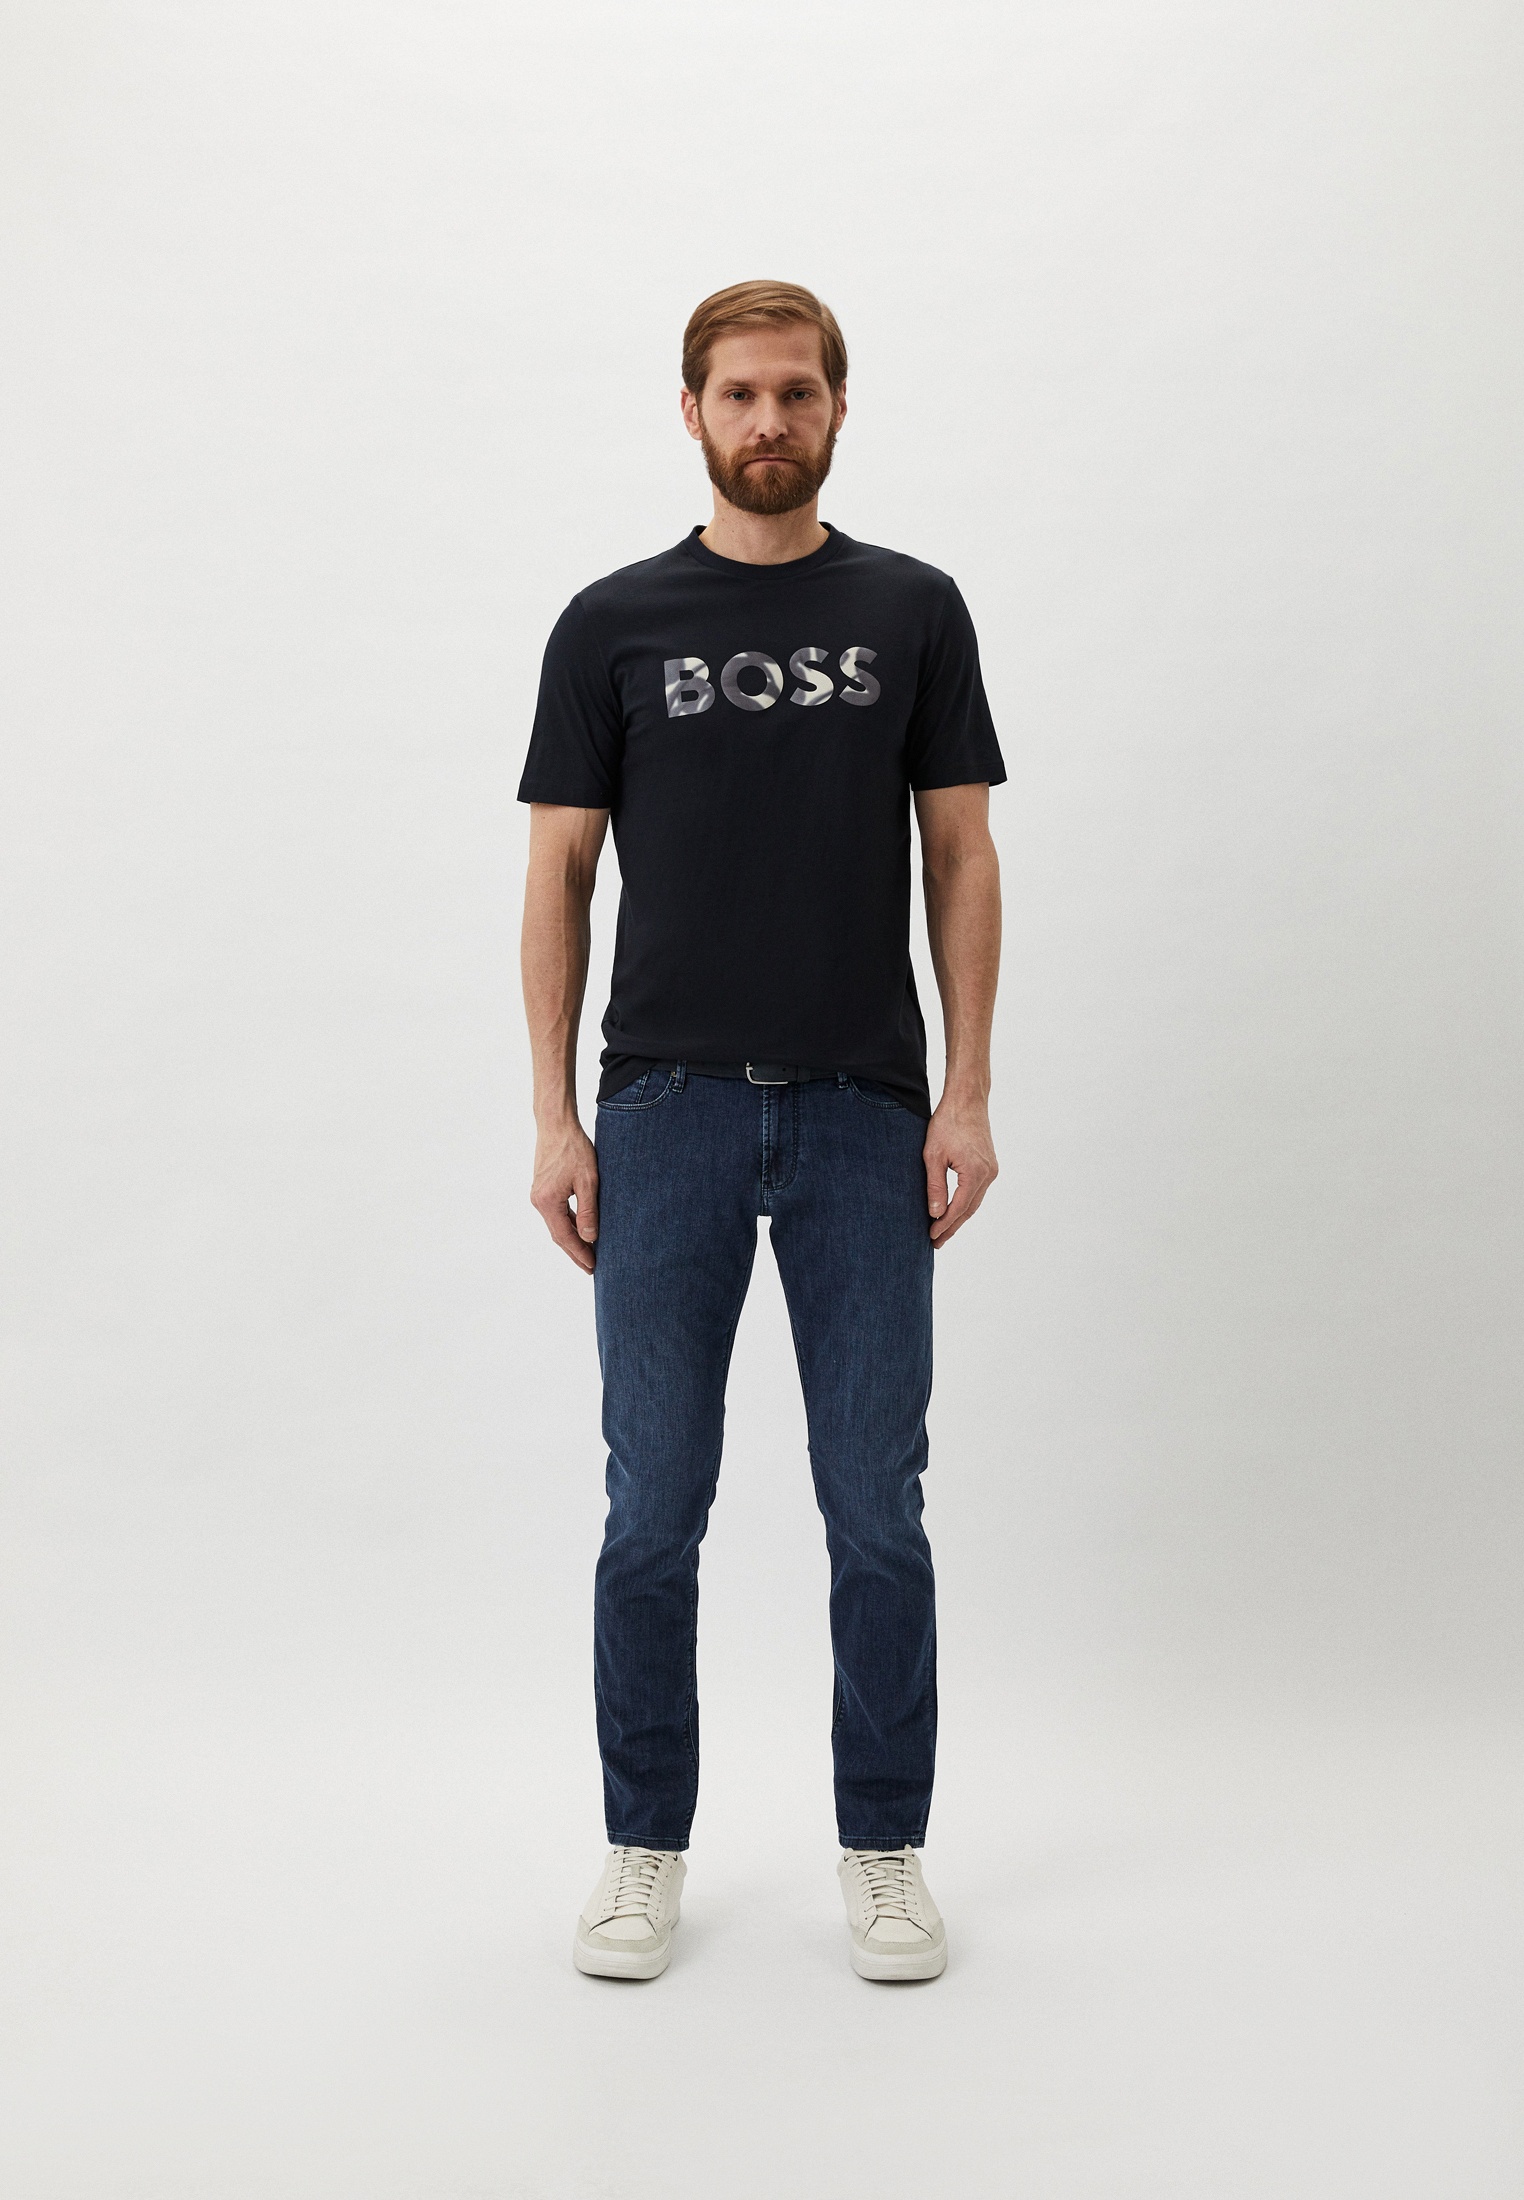 Мужская футболка Boss (Босс) 50513382: изображение 2